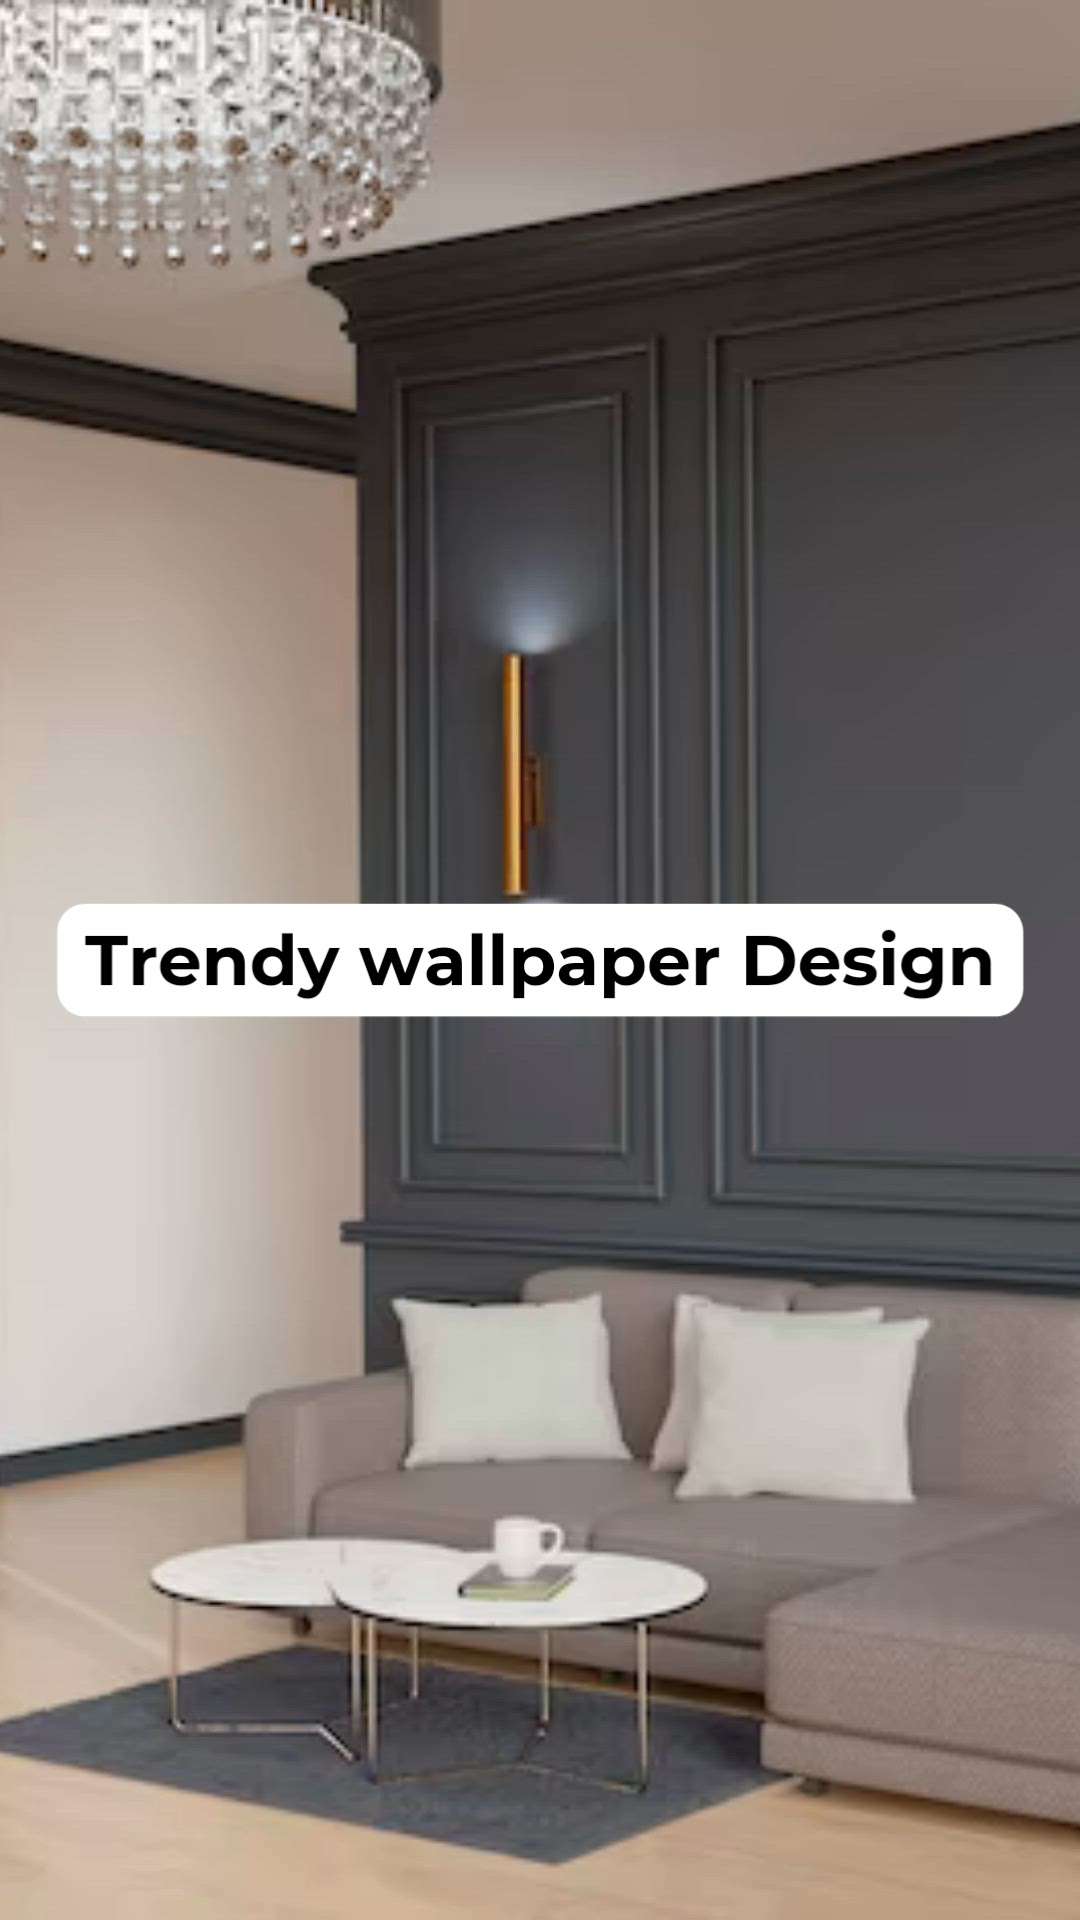 കുറച്ച് അടിപൊളിയാ wallpaper 🤗♥️



.
.
.
.
.

.


























#interiorpainting #ledcustomframe #WallPutty #WallDecors #LivingRoomWallPaper #WallDesigns #WallPainting #WALL_PANELLING #WALL_PAPER #customized_wallpaper #wallplastering #wallpaperrolles #wallpannel #wallgraphic #interiordesignkerala #interiores #interiorstylist #interirodesign #interiordesigers #kolocreativexommunity #ledecorinteriors